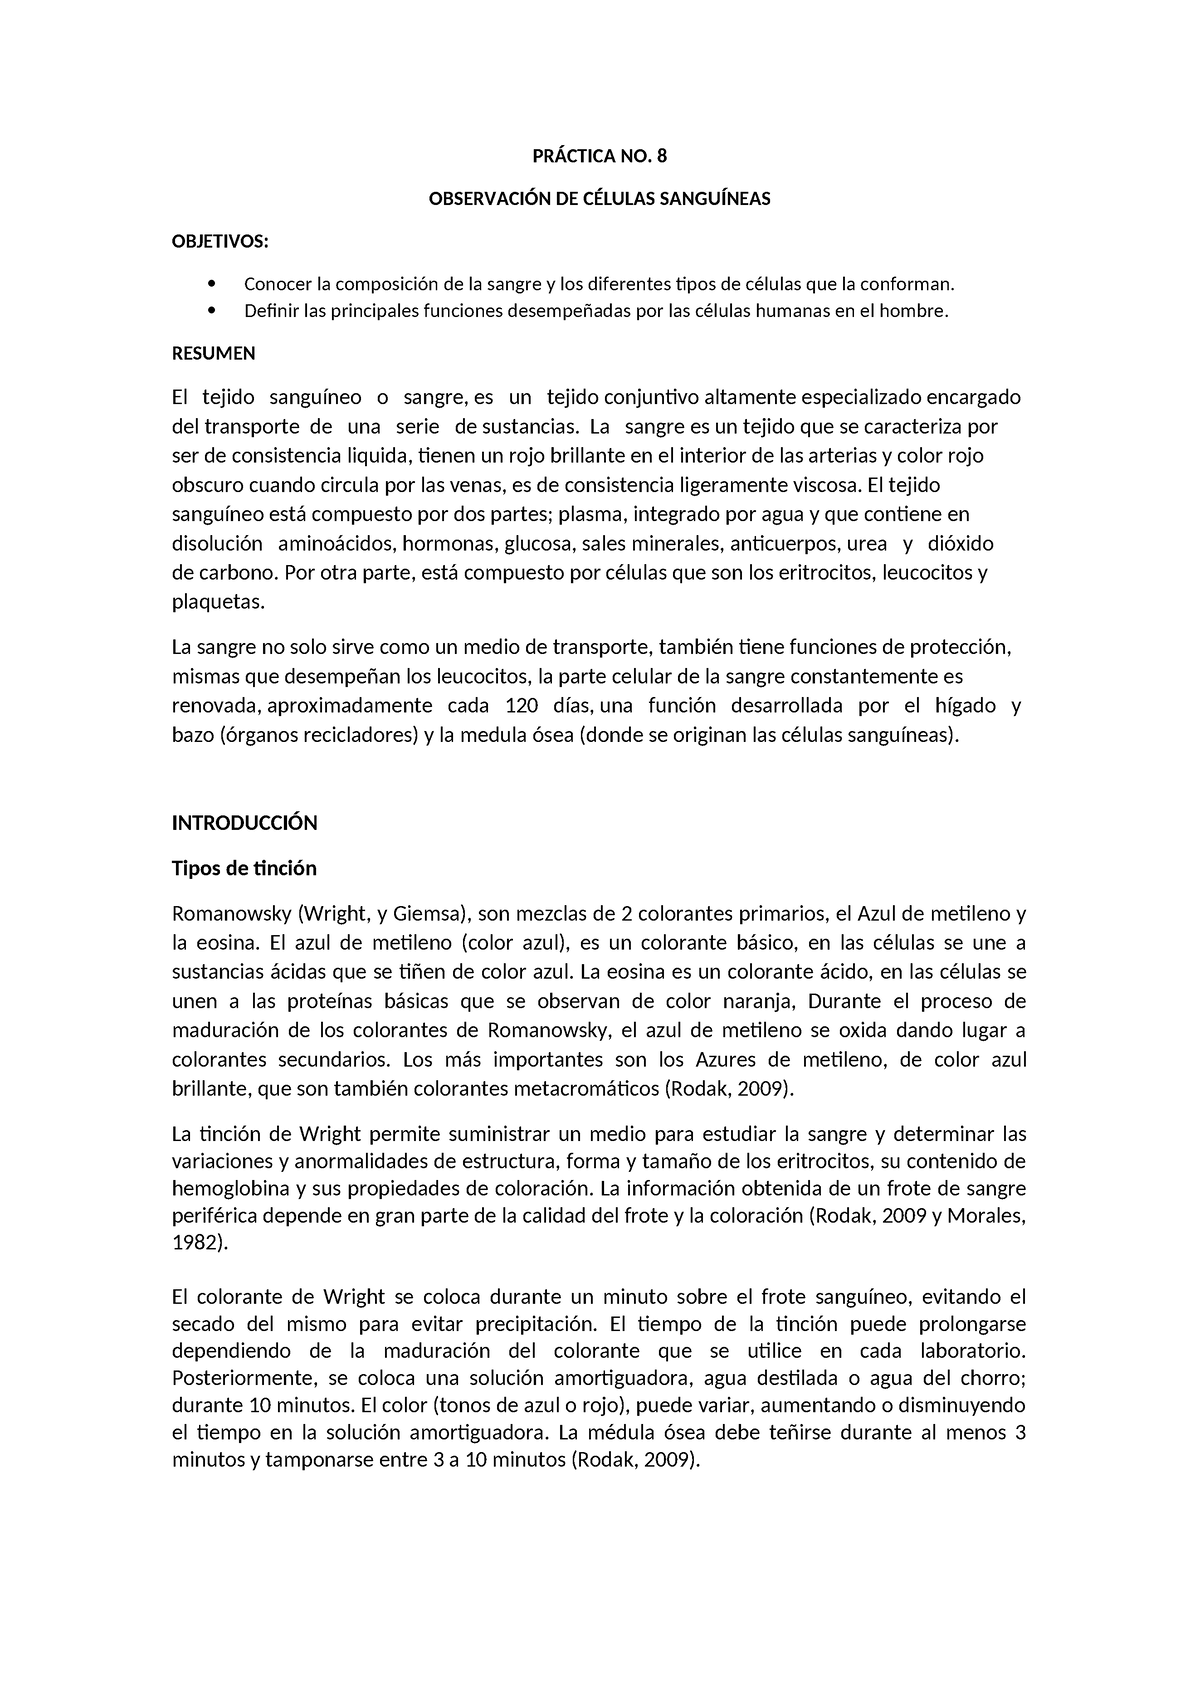 Práctica 8 - Praxctica - PRÁCTICA NO. 8 OBSERVACIÓN DE CÉLULAS ...